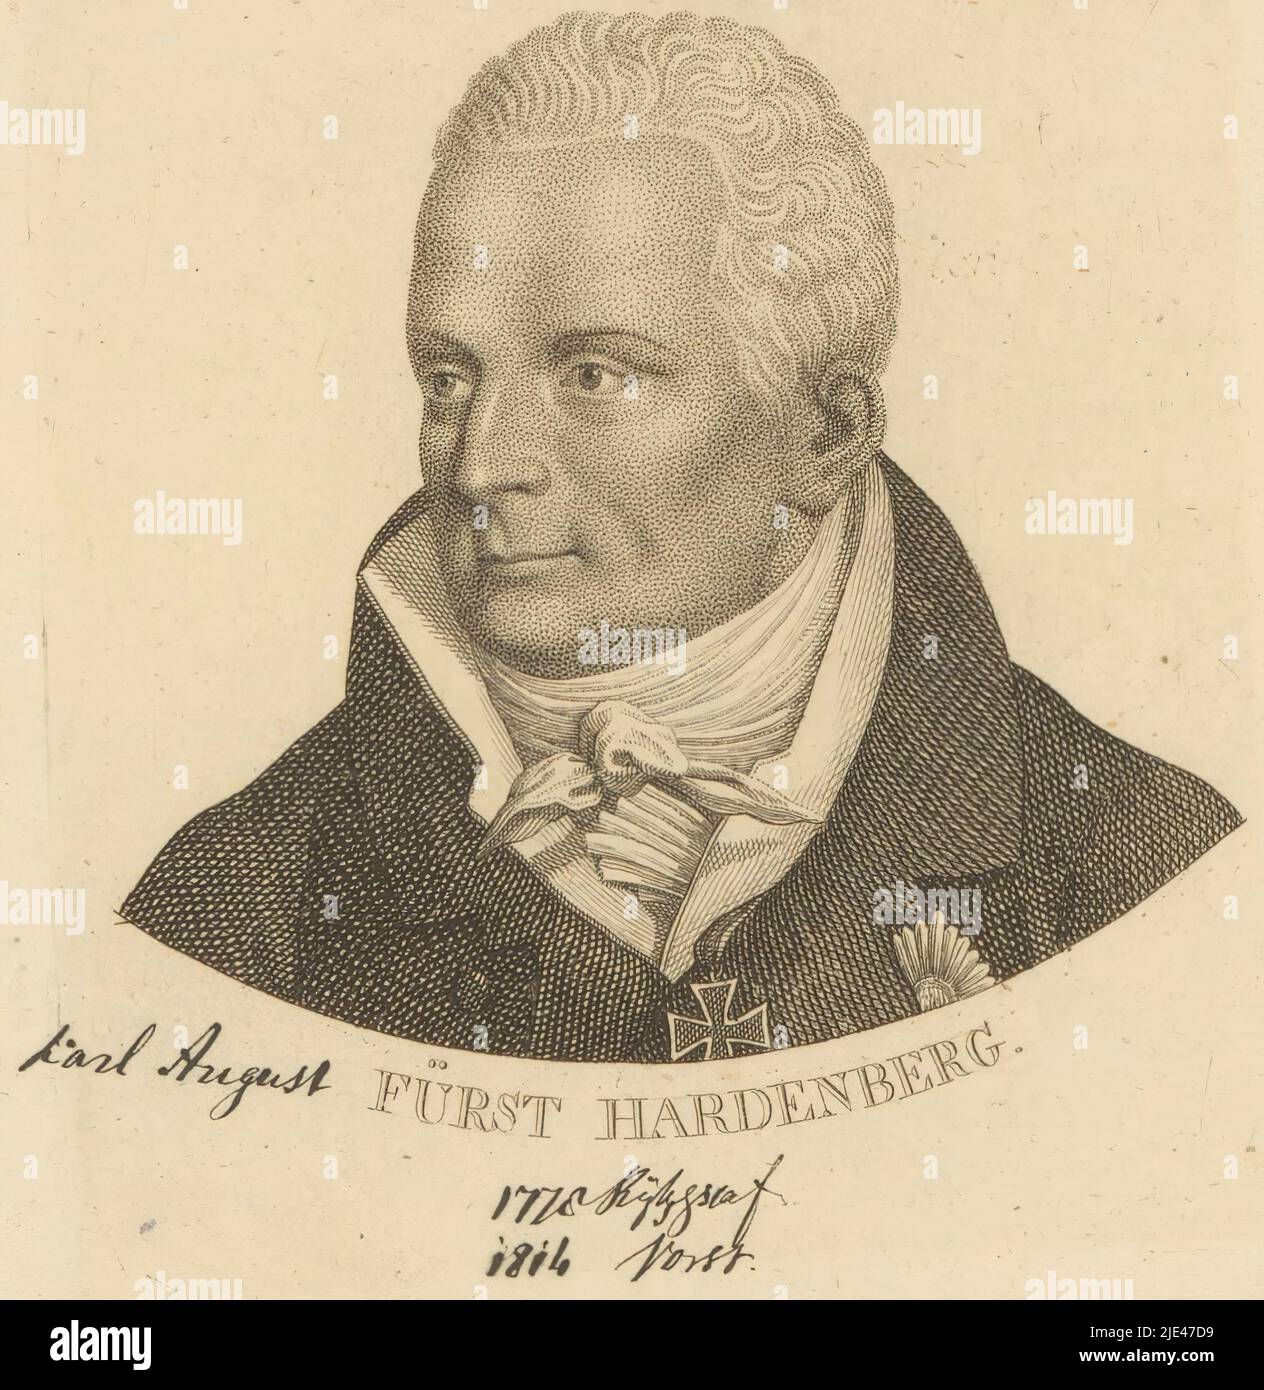 Portrait of Karl August von Hardenberg, Ernst Ludwig Riepenhausen, 1775 - 1840, print maker: Ernst Ludwig Riepenhausen, 1775 - 1840, paper, engraving, h 98 mm - w 88 mm Stock Photo